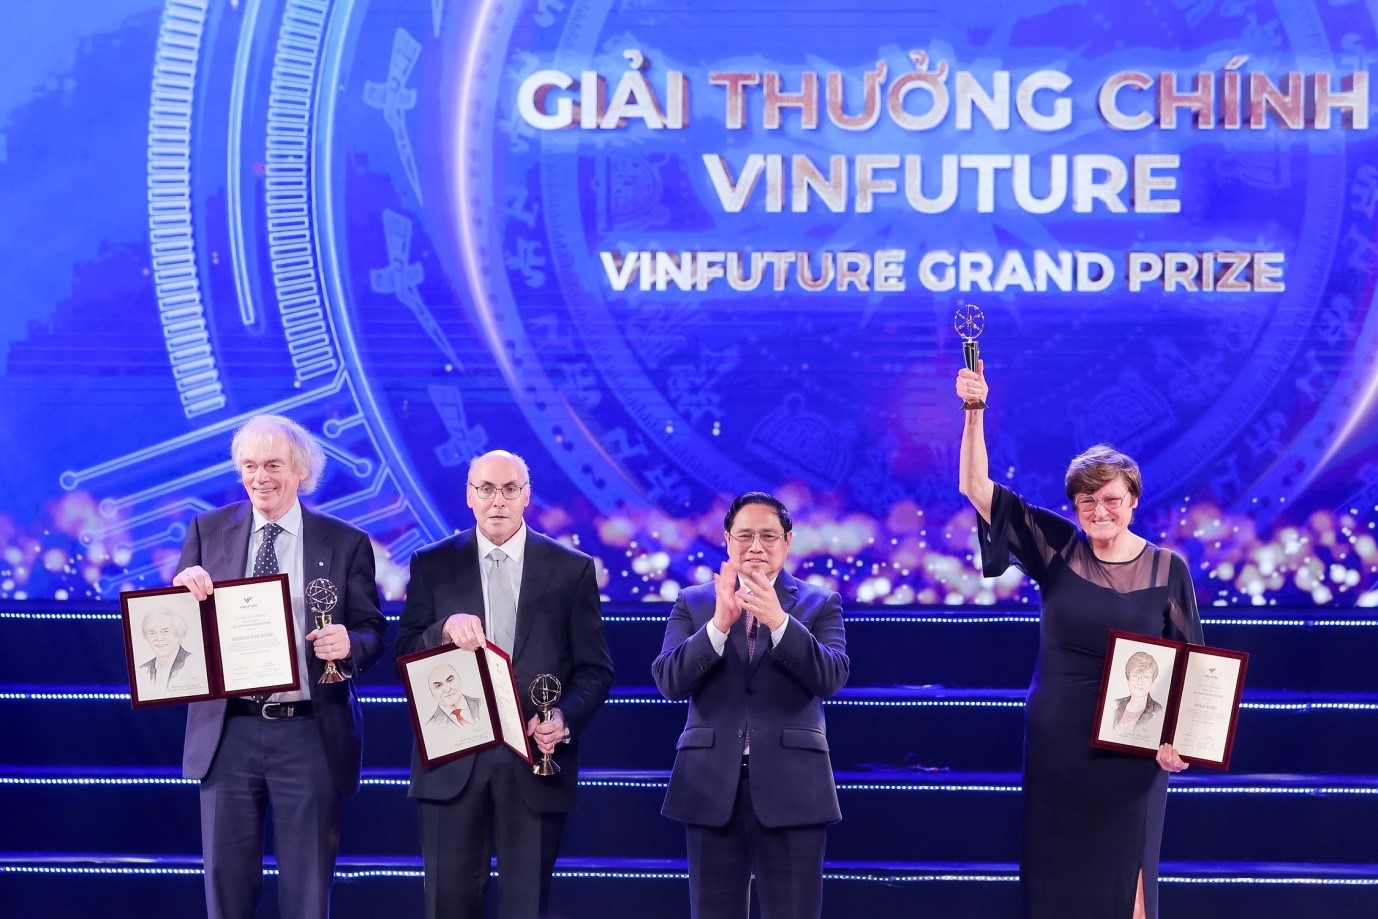 Kinh doanh - Chủ nhân Giải thưởng Chính VinFuture tiếp tục được trao giải Nobel